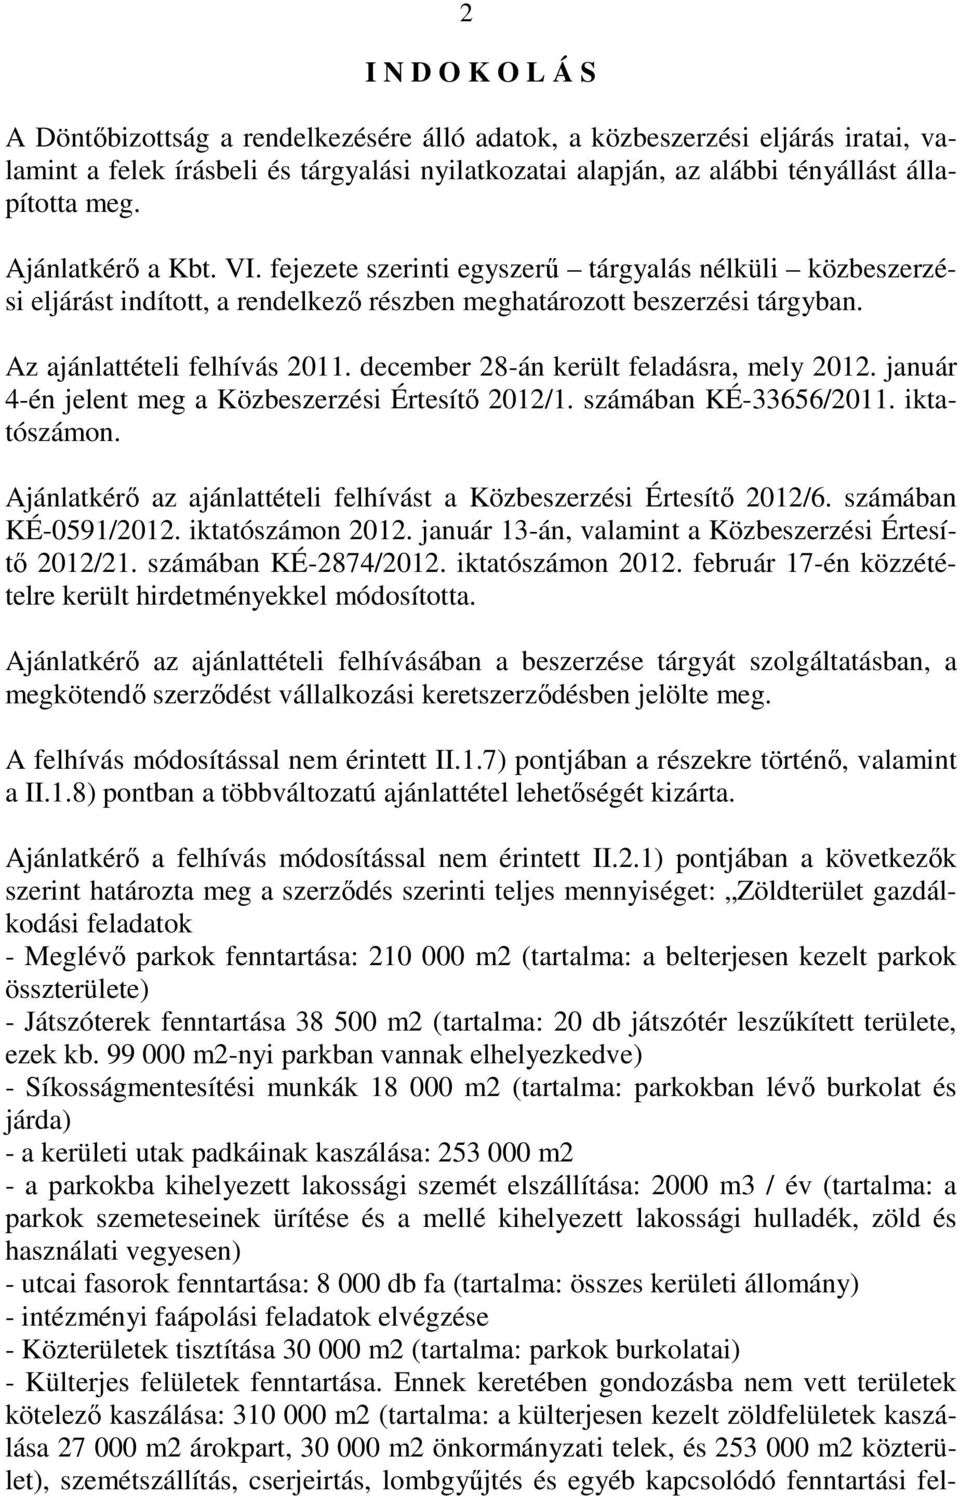 december 28-án került feladásra, mely 2012. január 4-én jelent meg a Közbeszerzési Értesítı 2012/1. számában KÉ-33656/2011. iktatószámon.